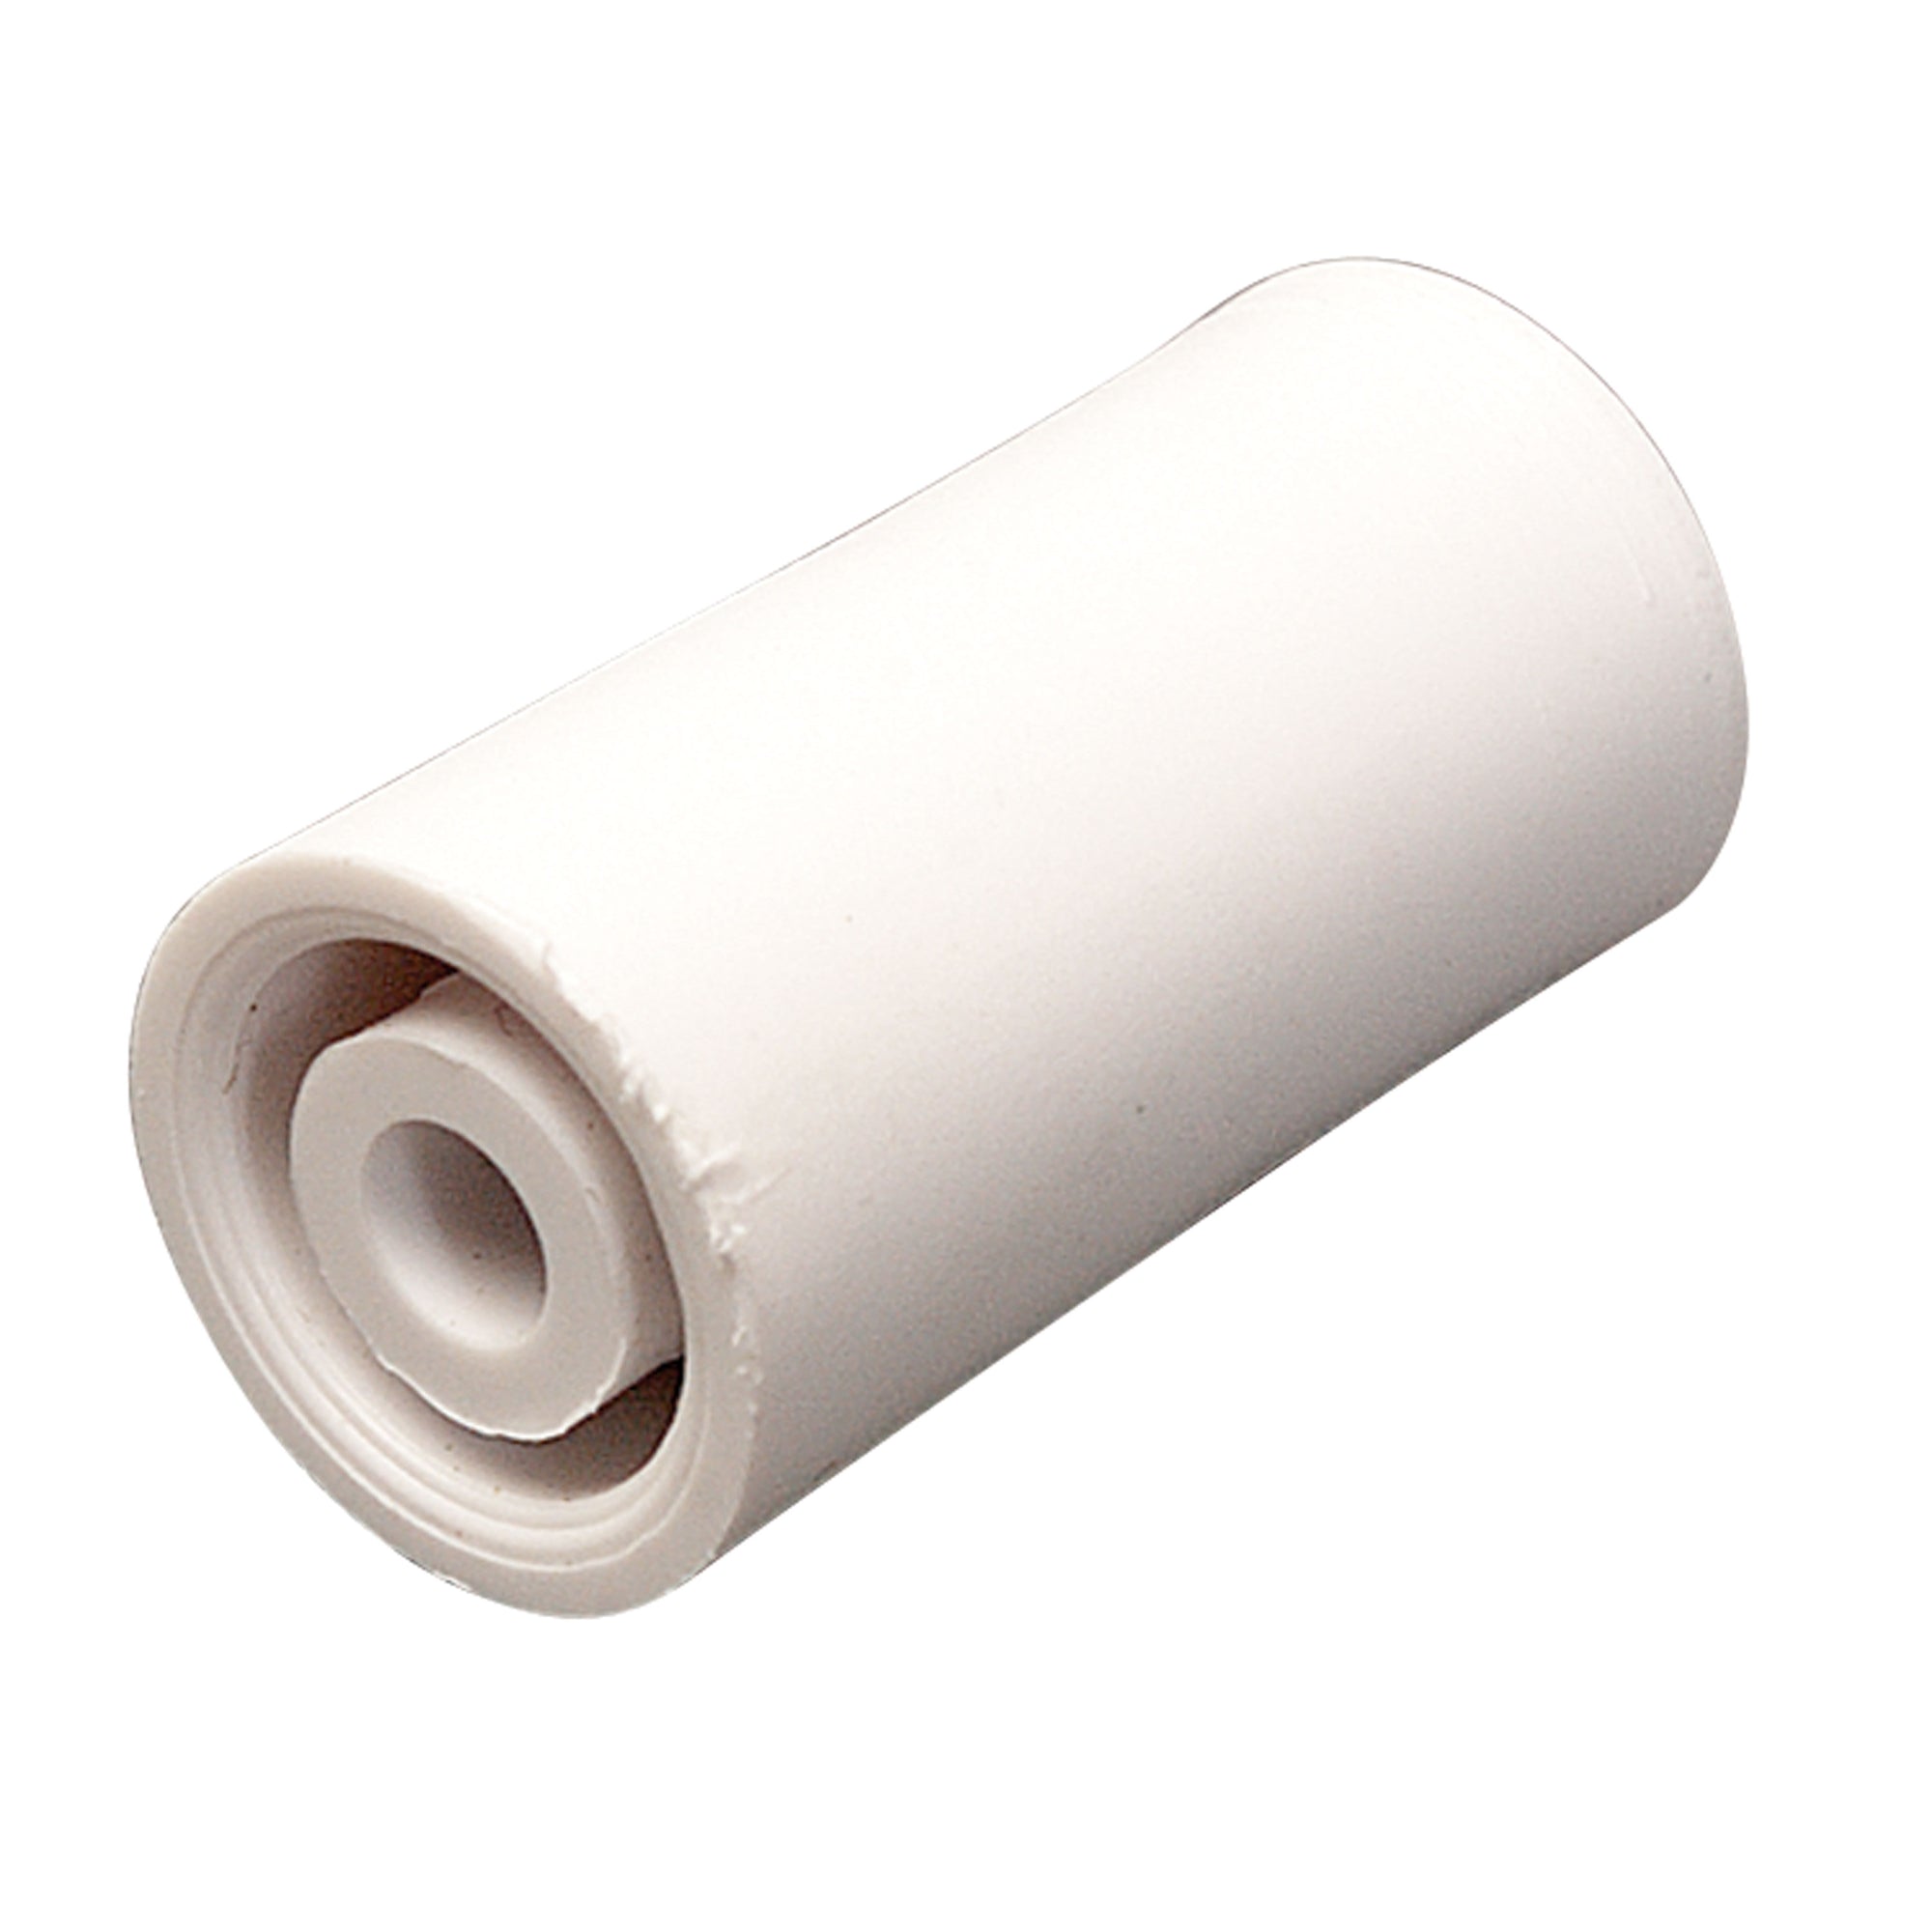 AP Products 013-091W Nylon Bumper - 2-7/8", White